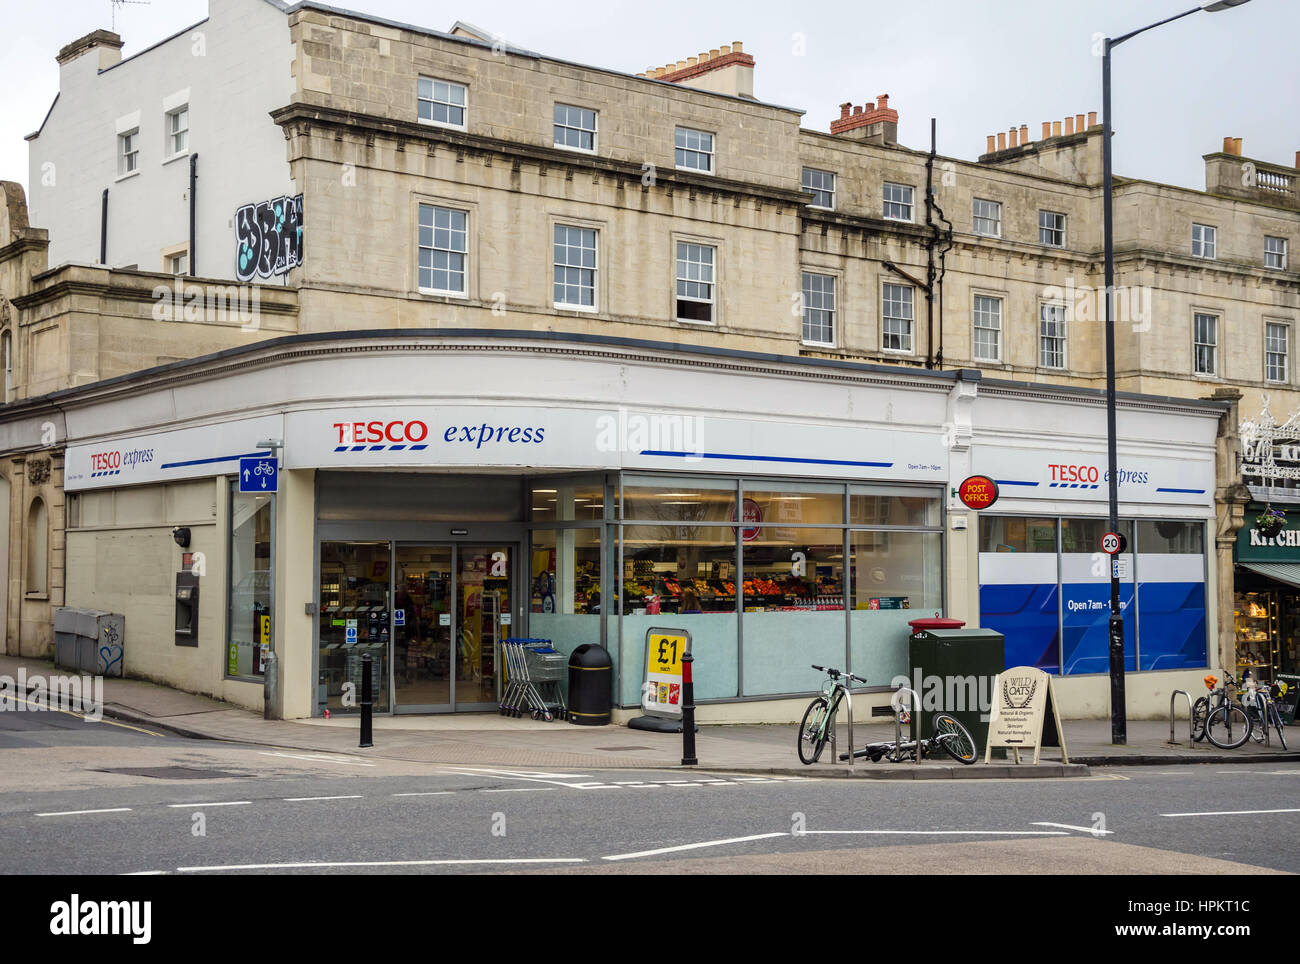 A Tesco Express store on Whiteladies Road in Bristol. Stock Photo